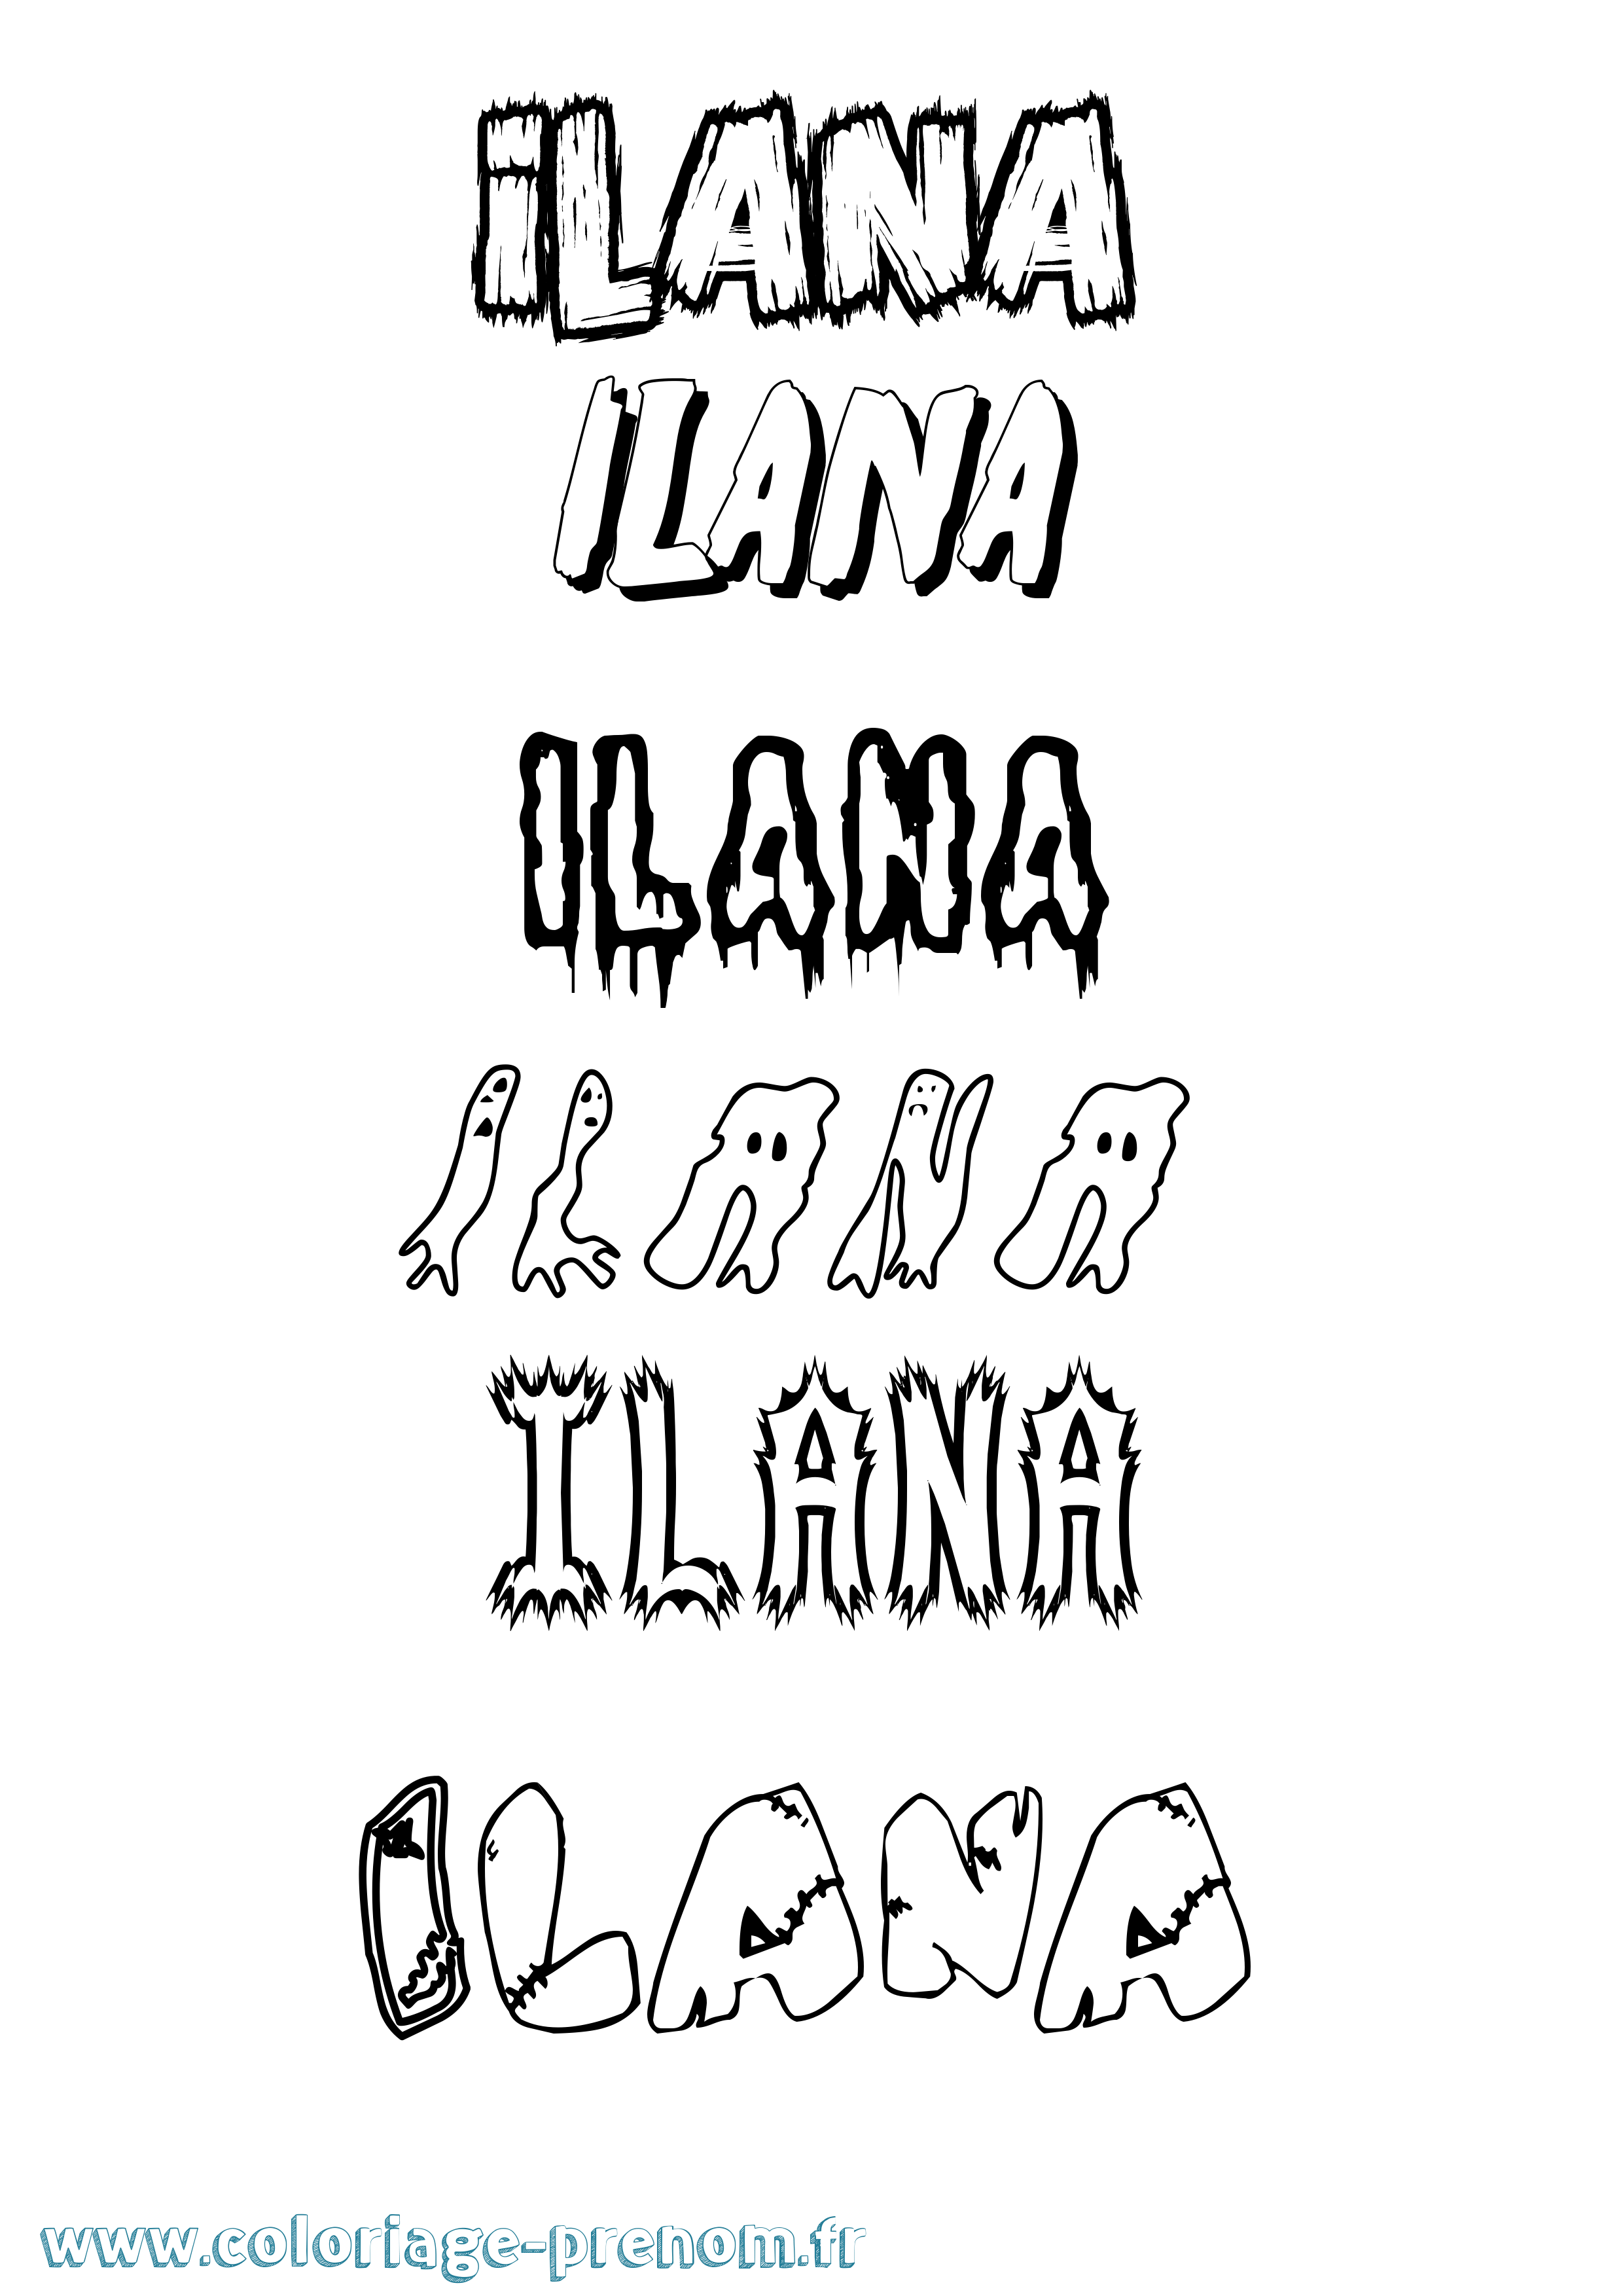 Coloriage prénom Ilana